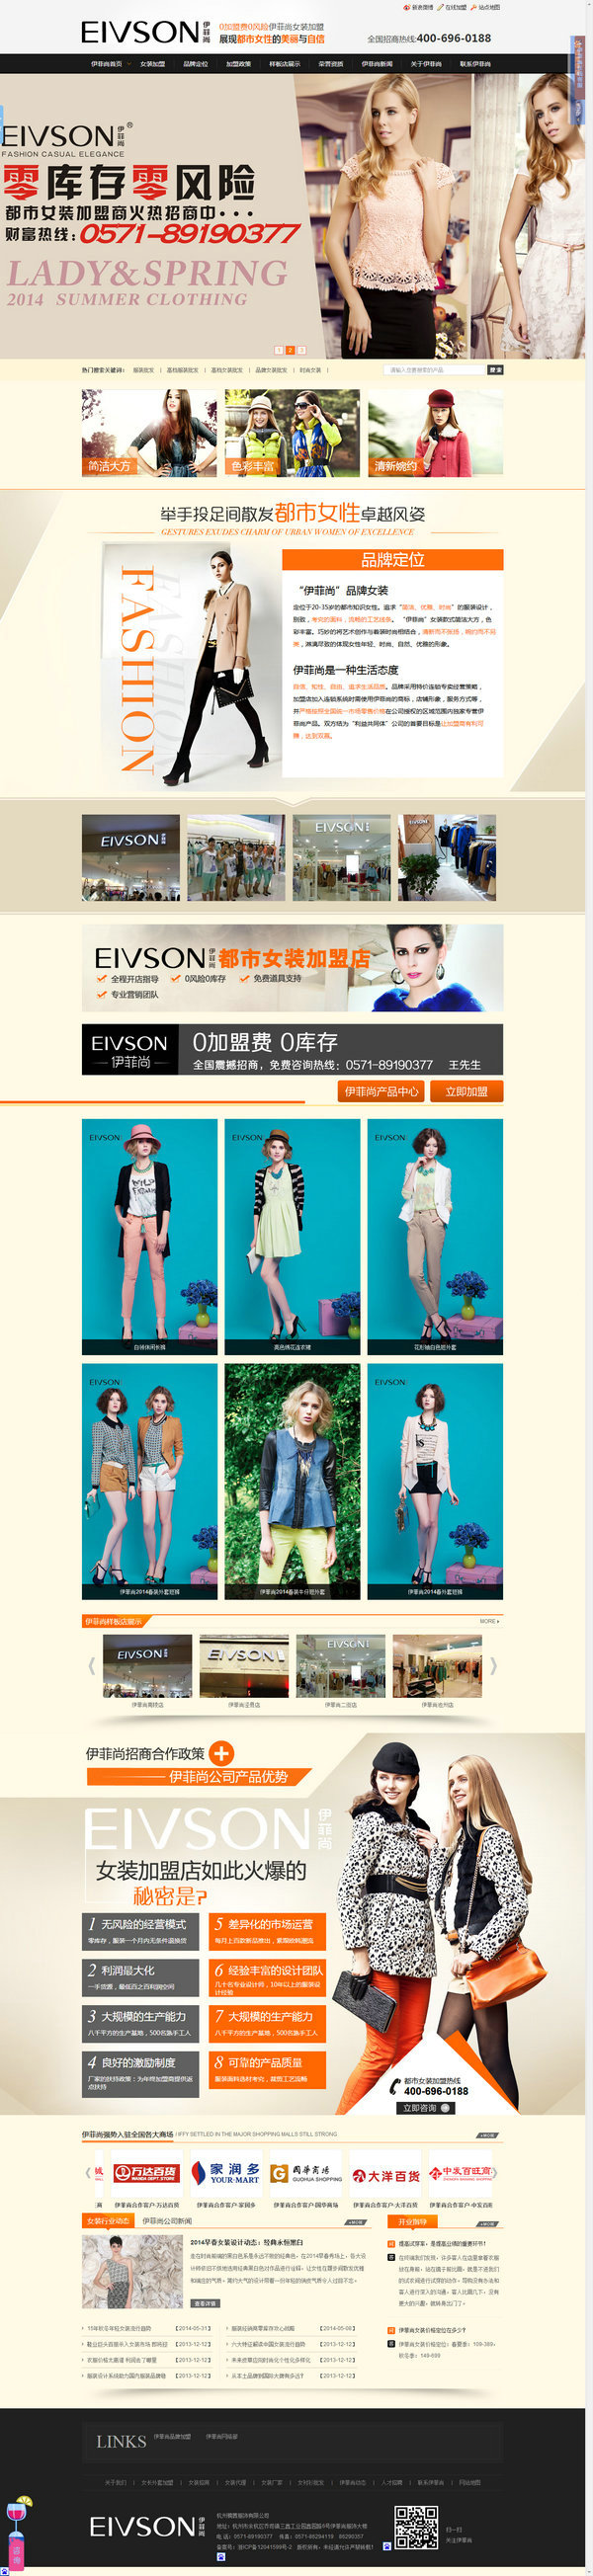 杭州伊菲尚时尚女装加盟营销型网站